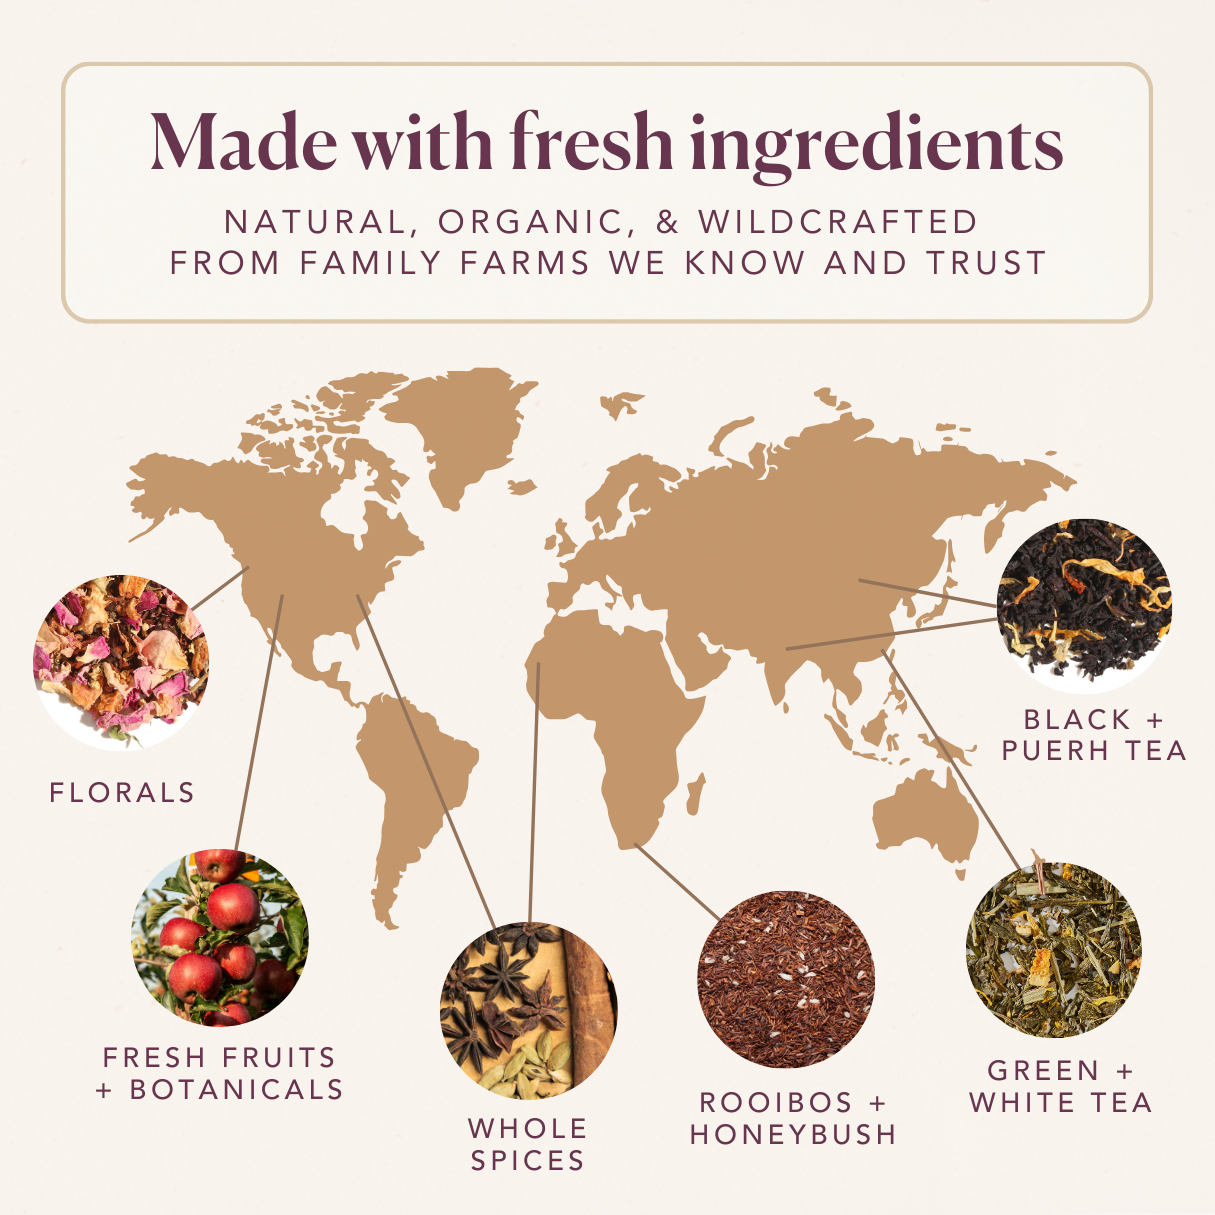 Wildberry Refresher Herbal Tea (Berries - Lavender)